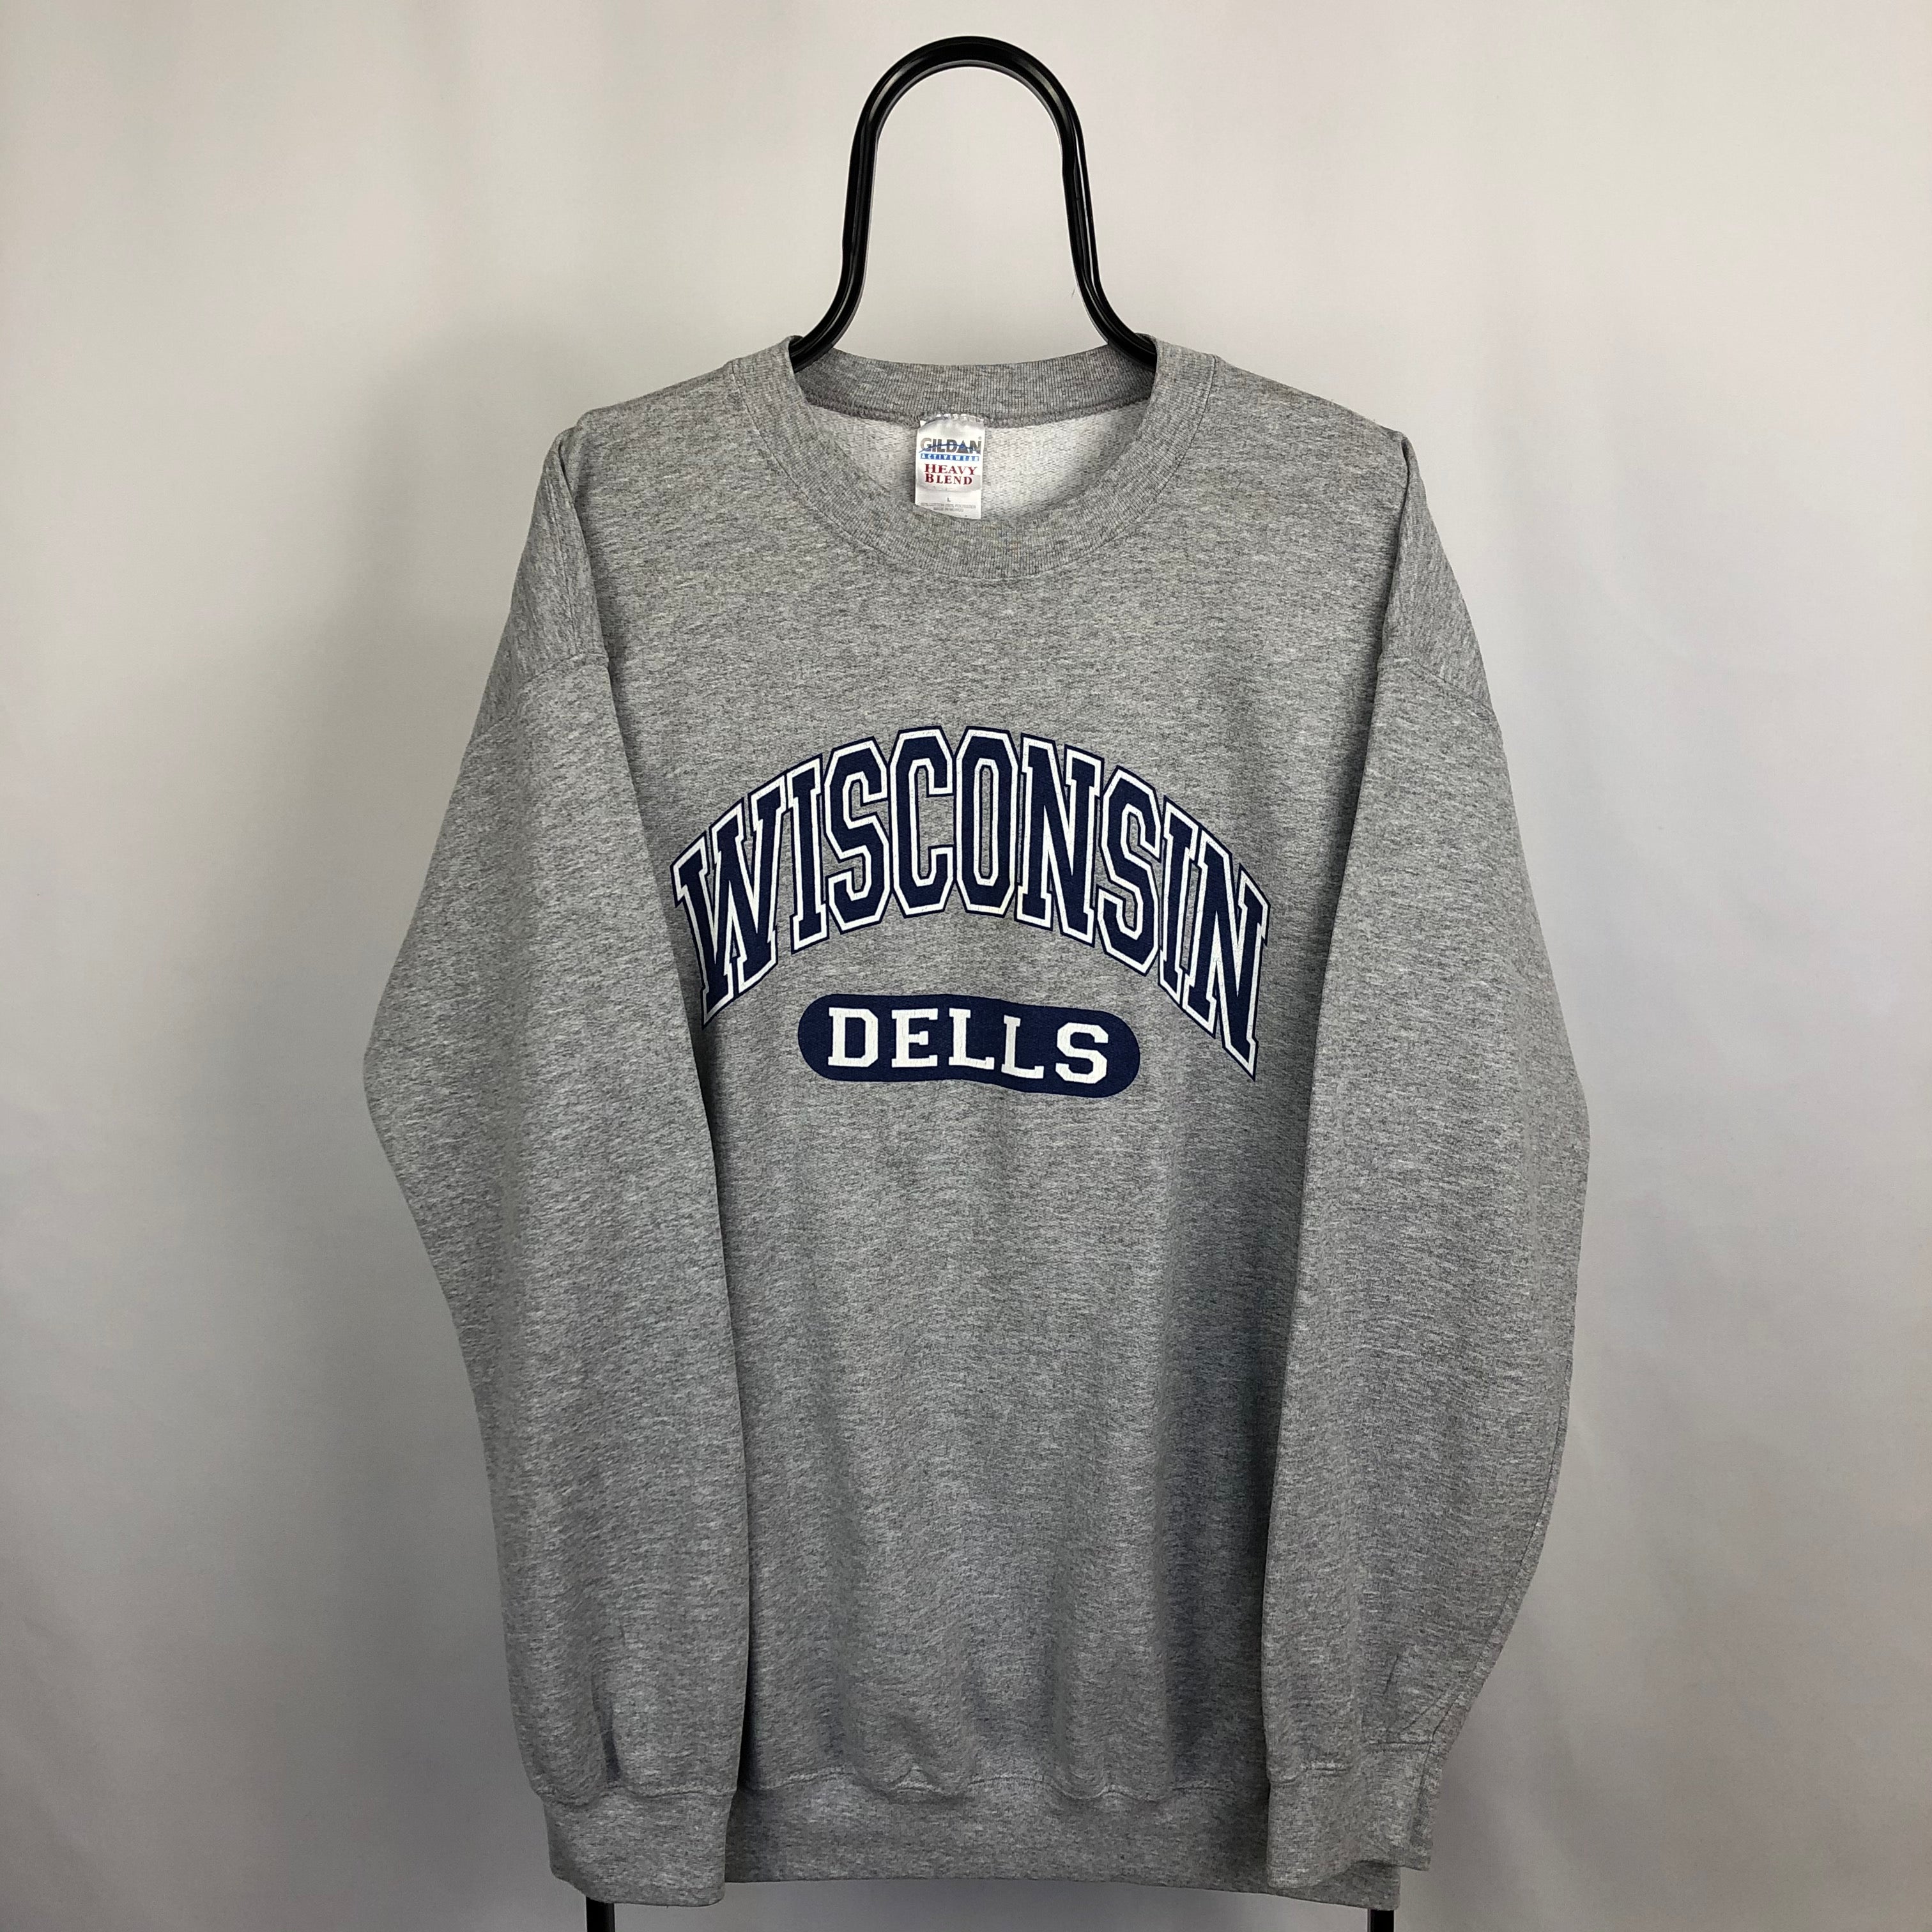 Vintage 'Wisconsin' College Sweatshirt - Men's Large/Women's XL ...